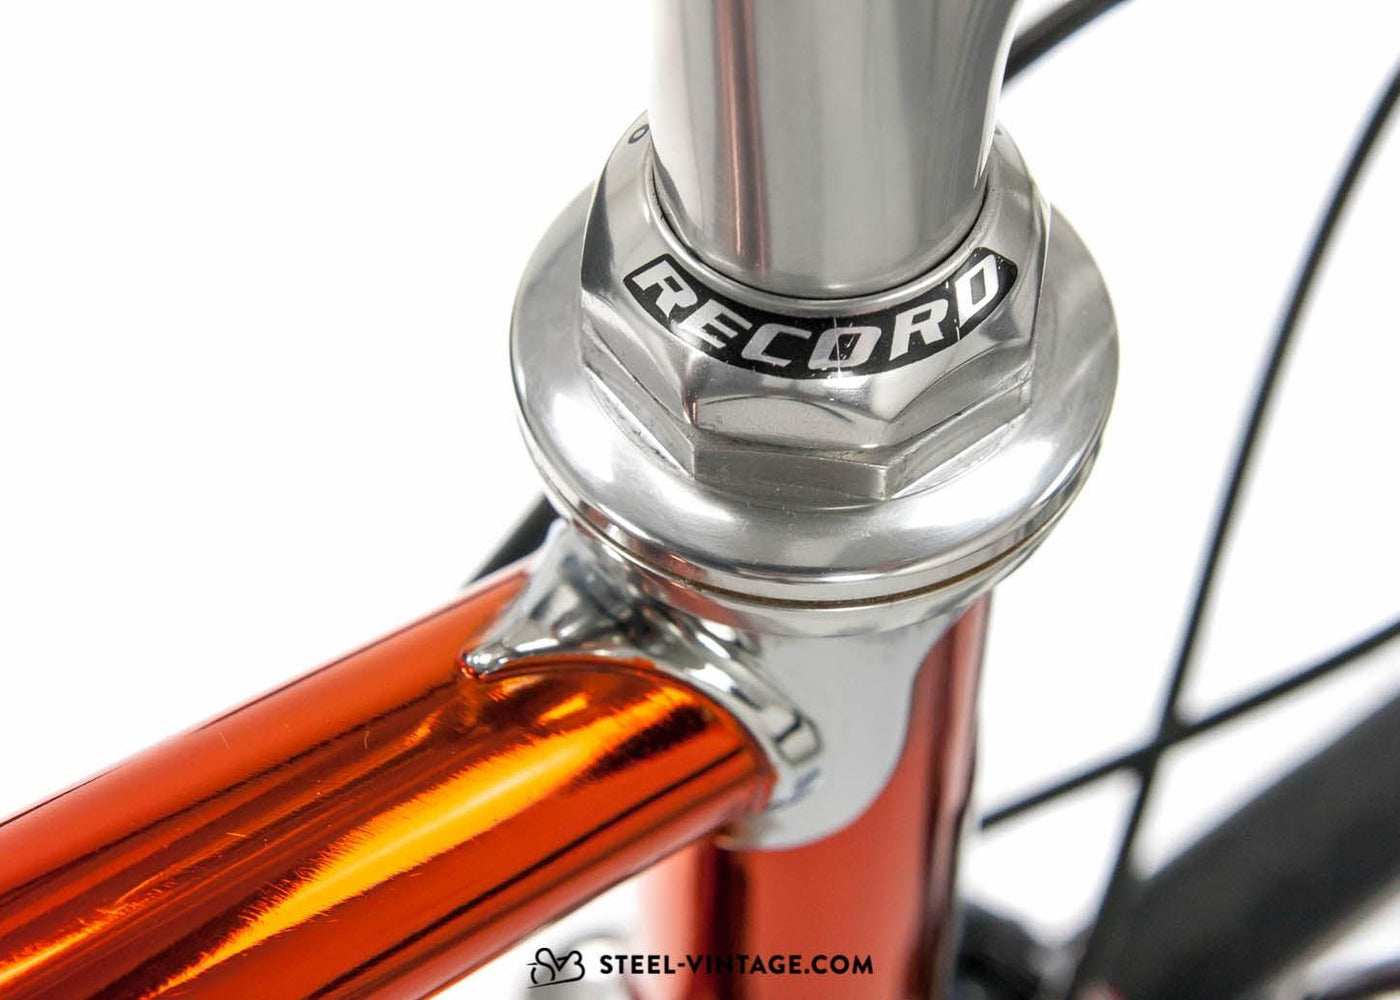 Steel Vintage Bikes - Wilier Triestina Superleggera new bicycle